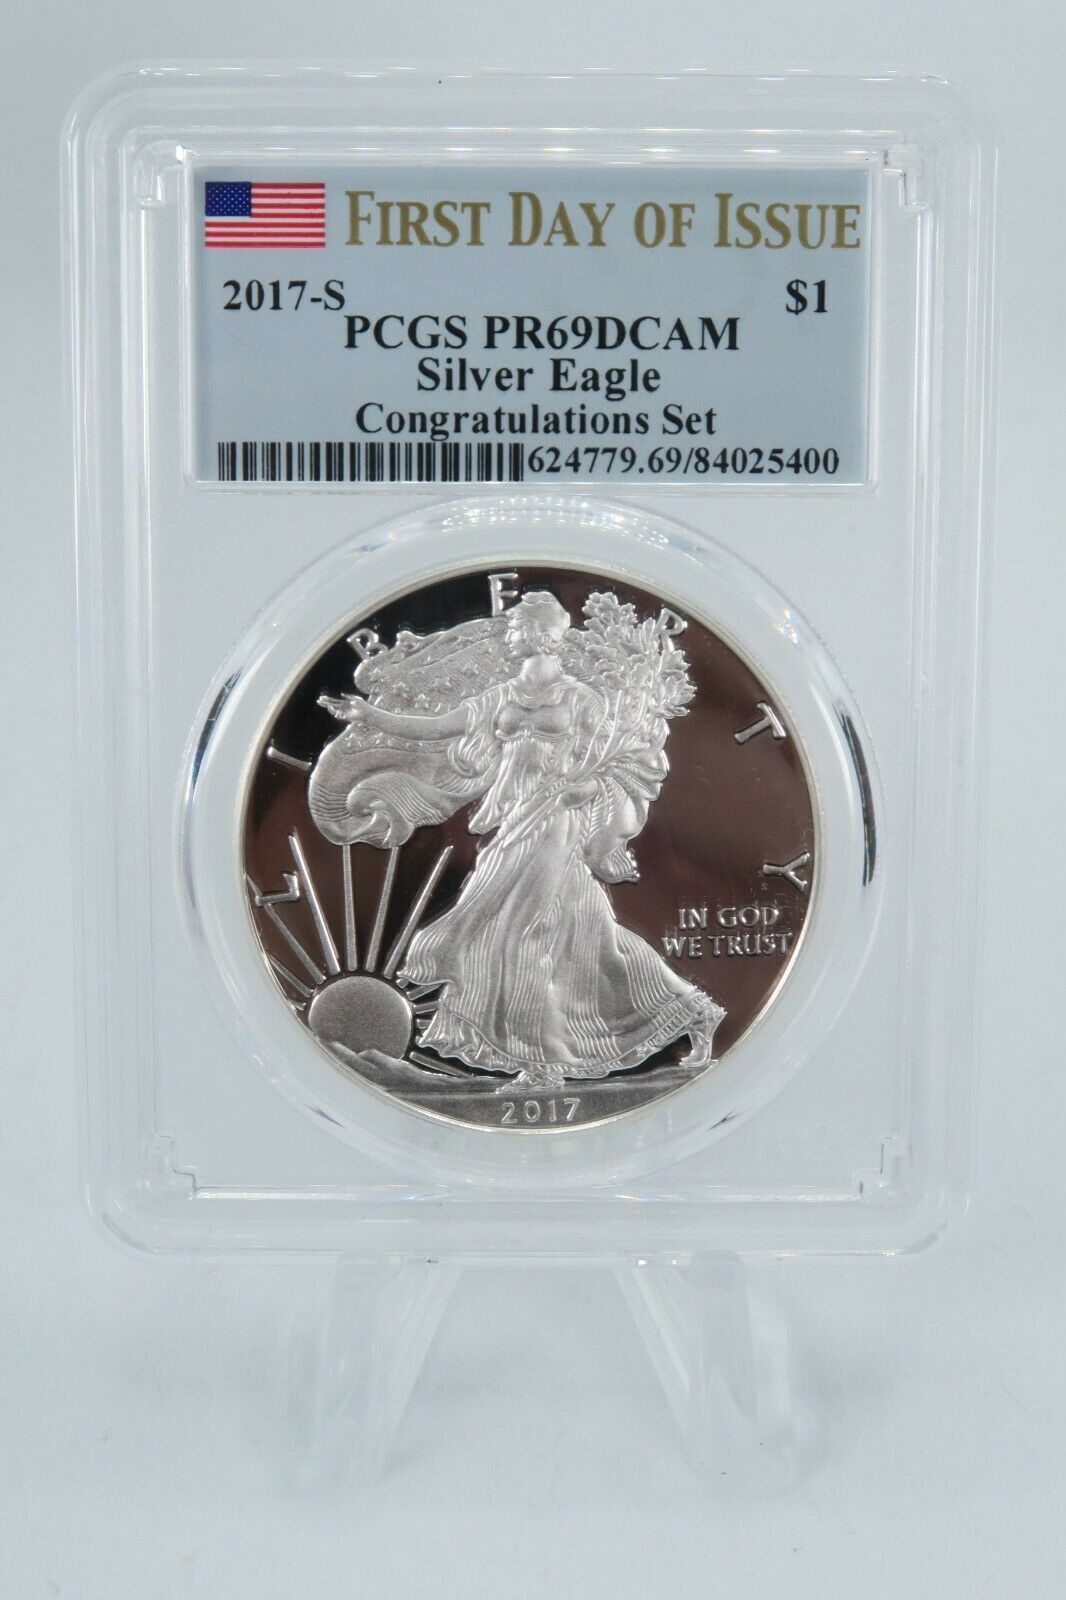 NEW売り切れる前に☆ アンティークコイン コイン 金貨 銀貨 送料無料 2017-S PCGS PR69DCAM